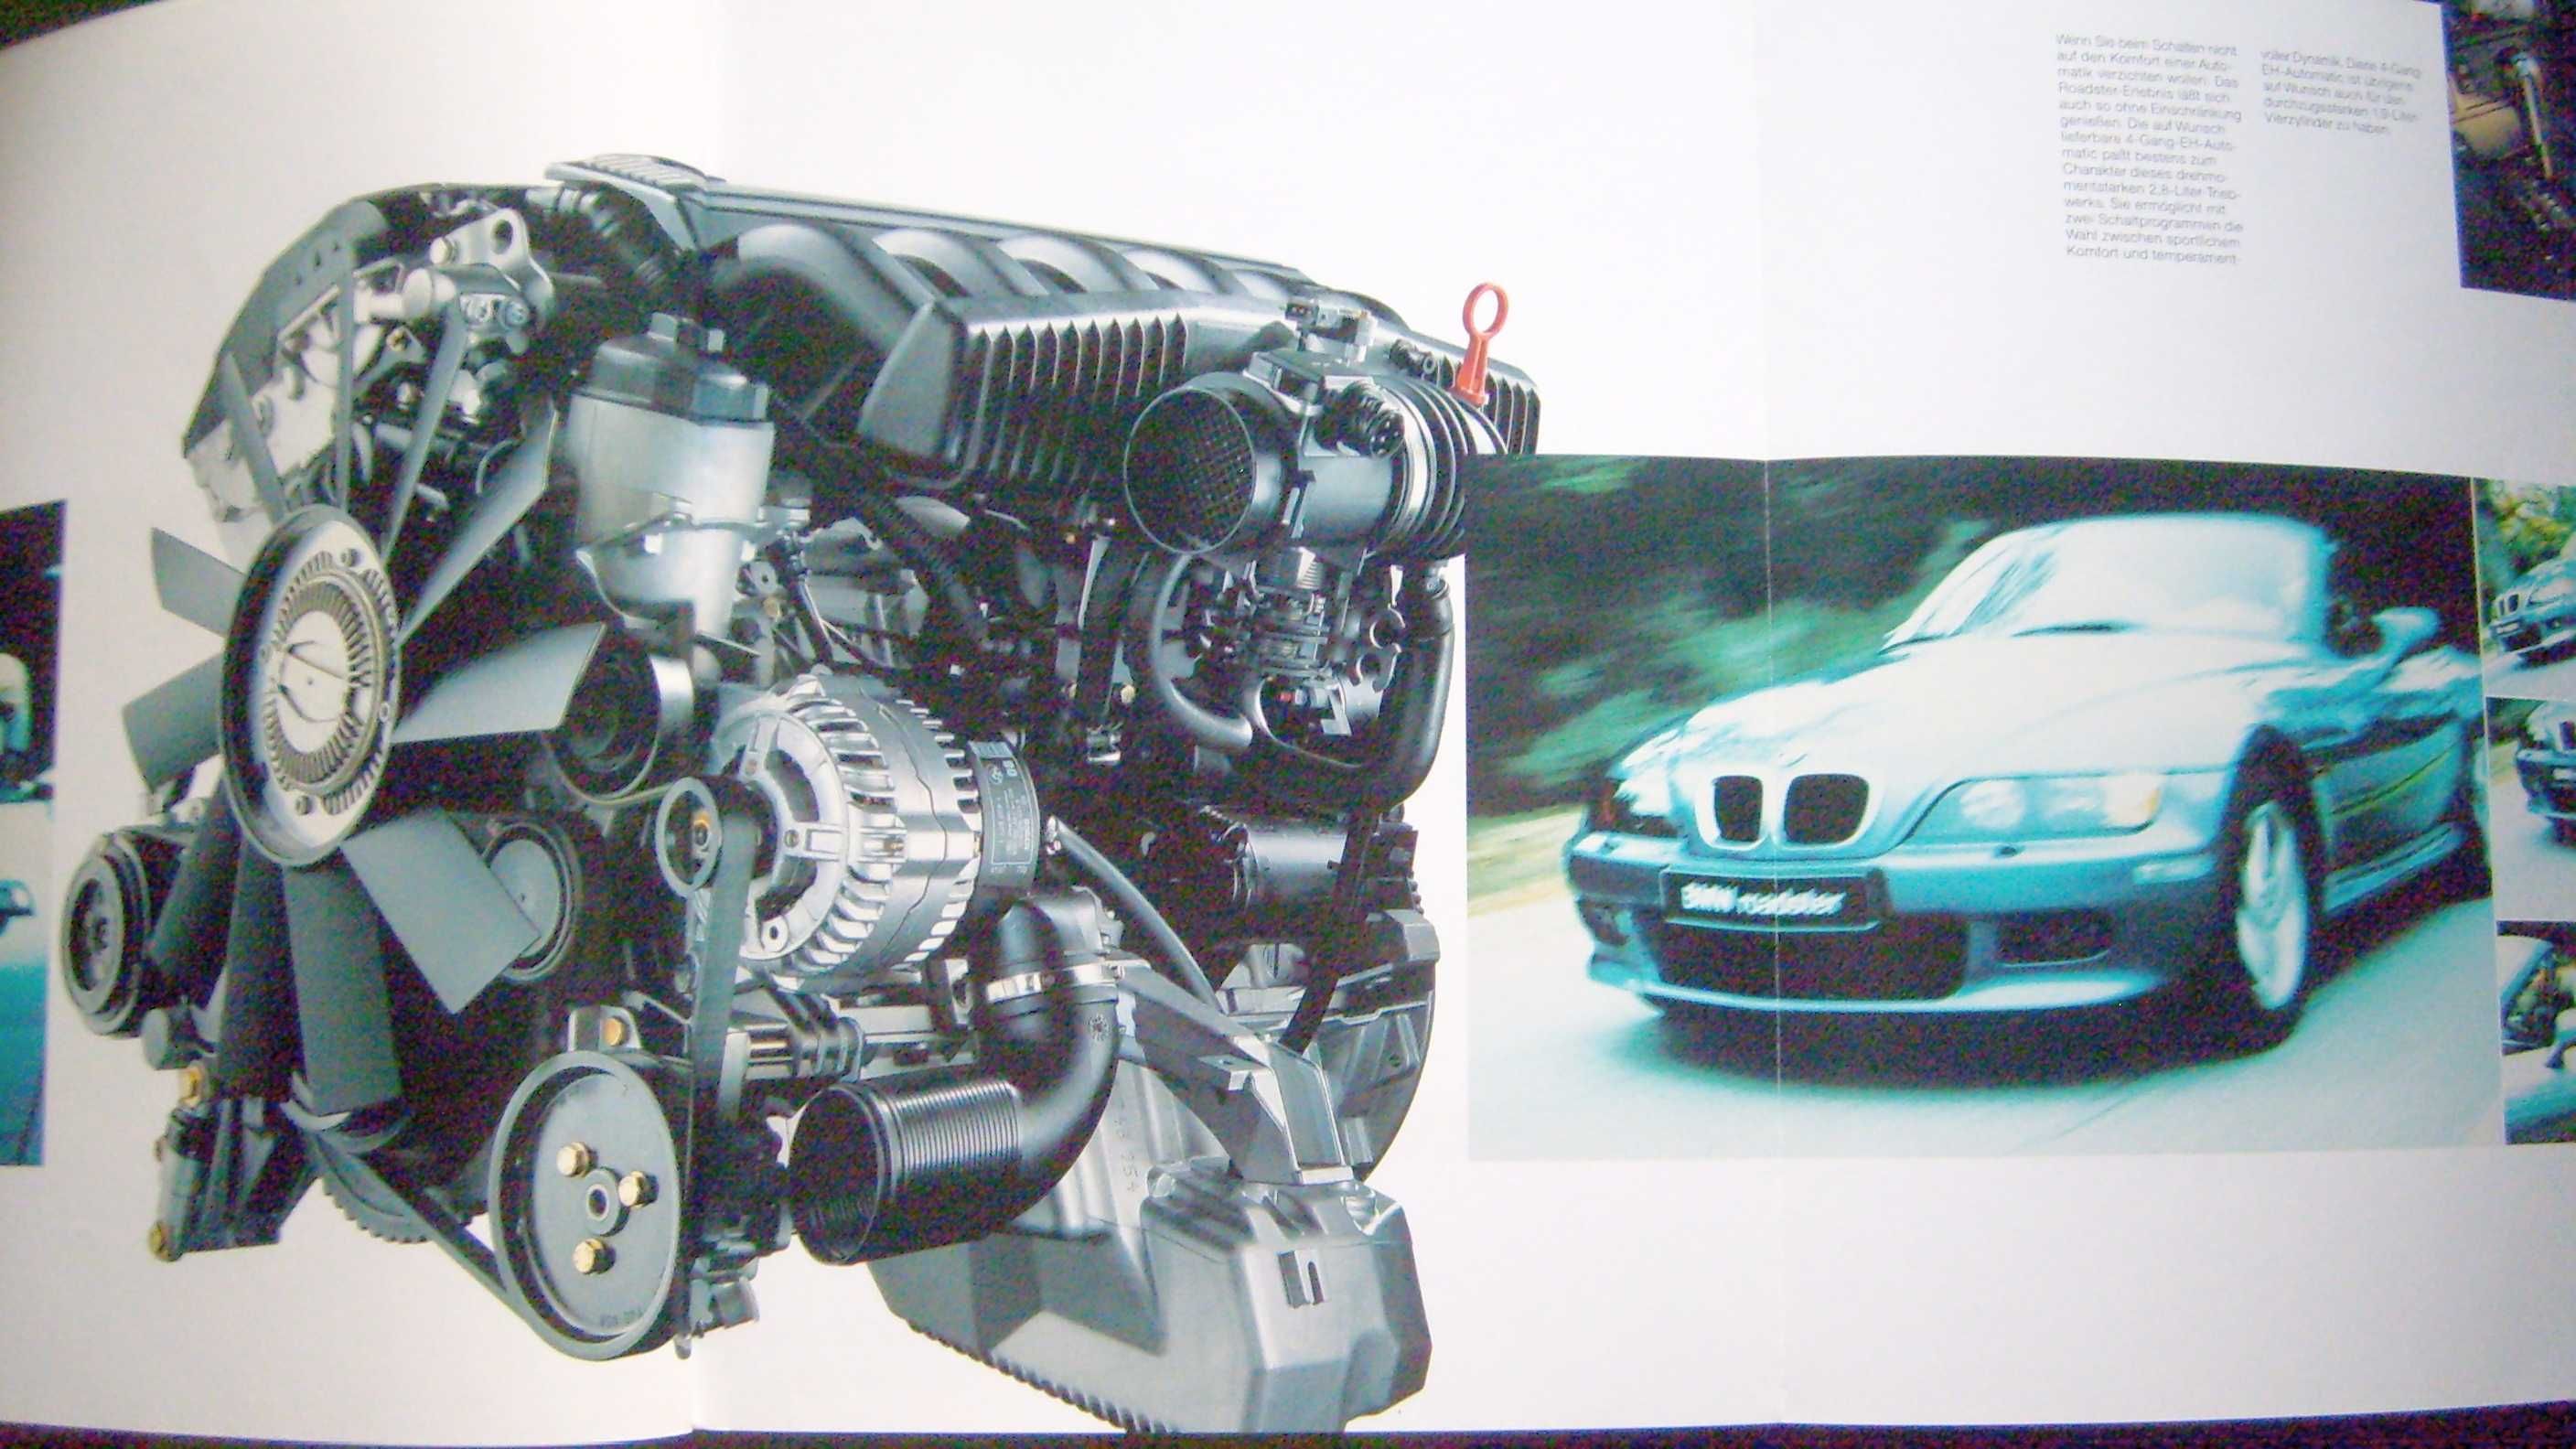 BMW Z3 Roadster E36/7 - 1998 obszerny prospekt 44 str., stan BDB